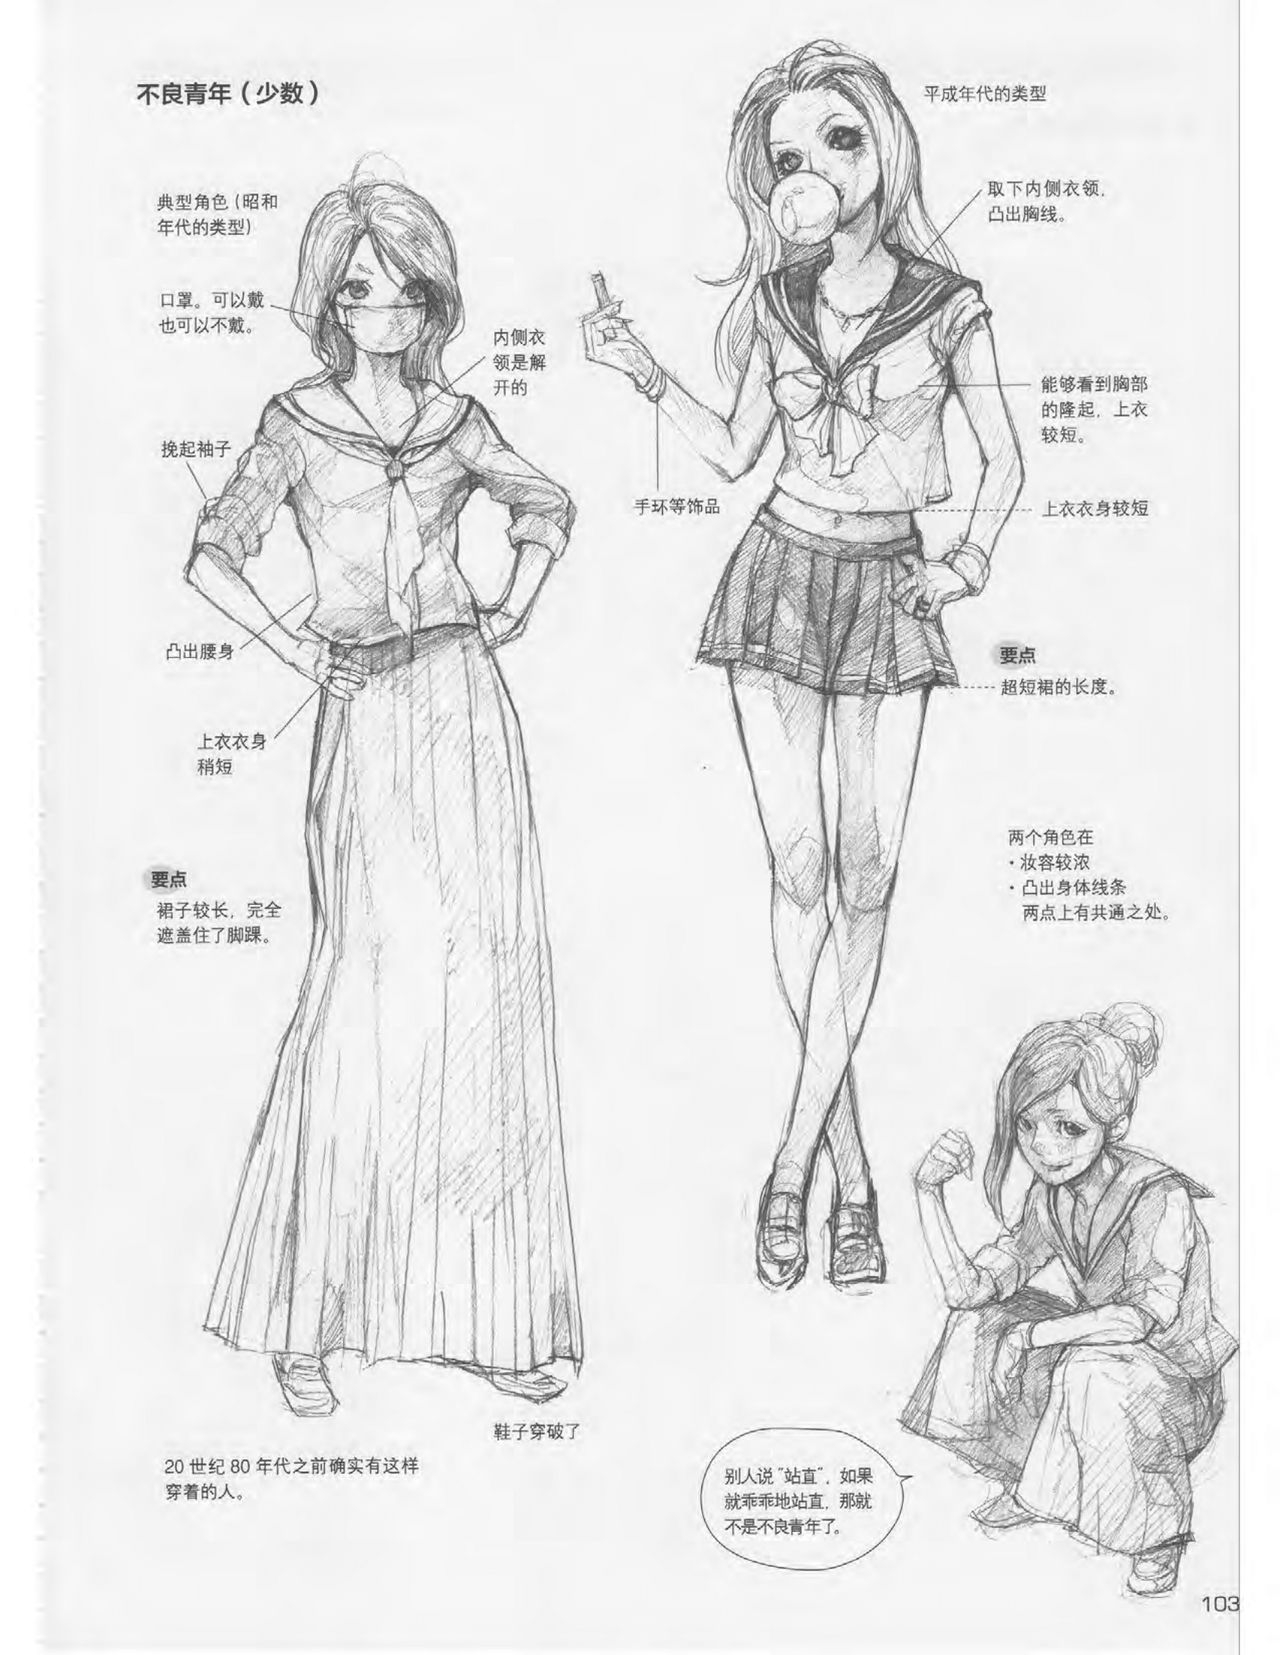 Japanese Manga Master Lecture 3: Lin Akira and Kakumaru Maru Talk About Glamorous Character Modeling 103